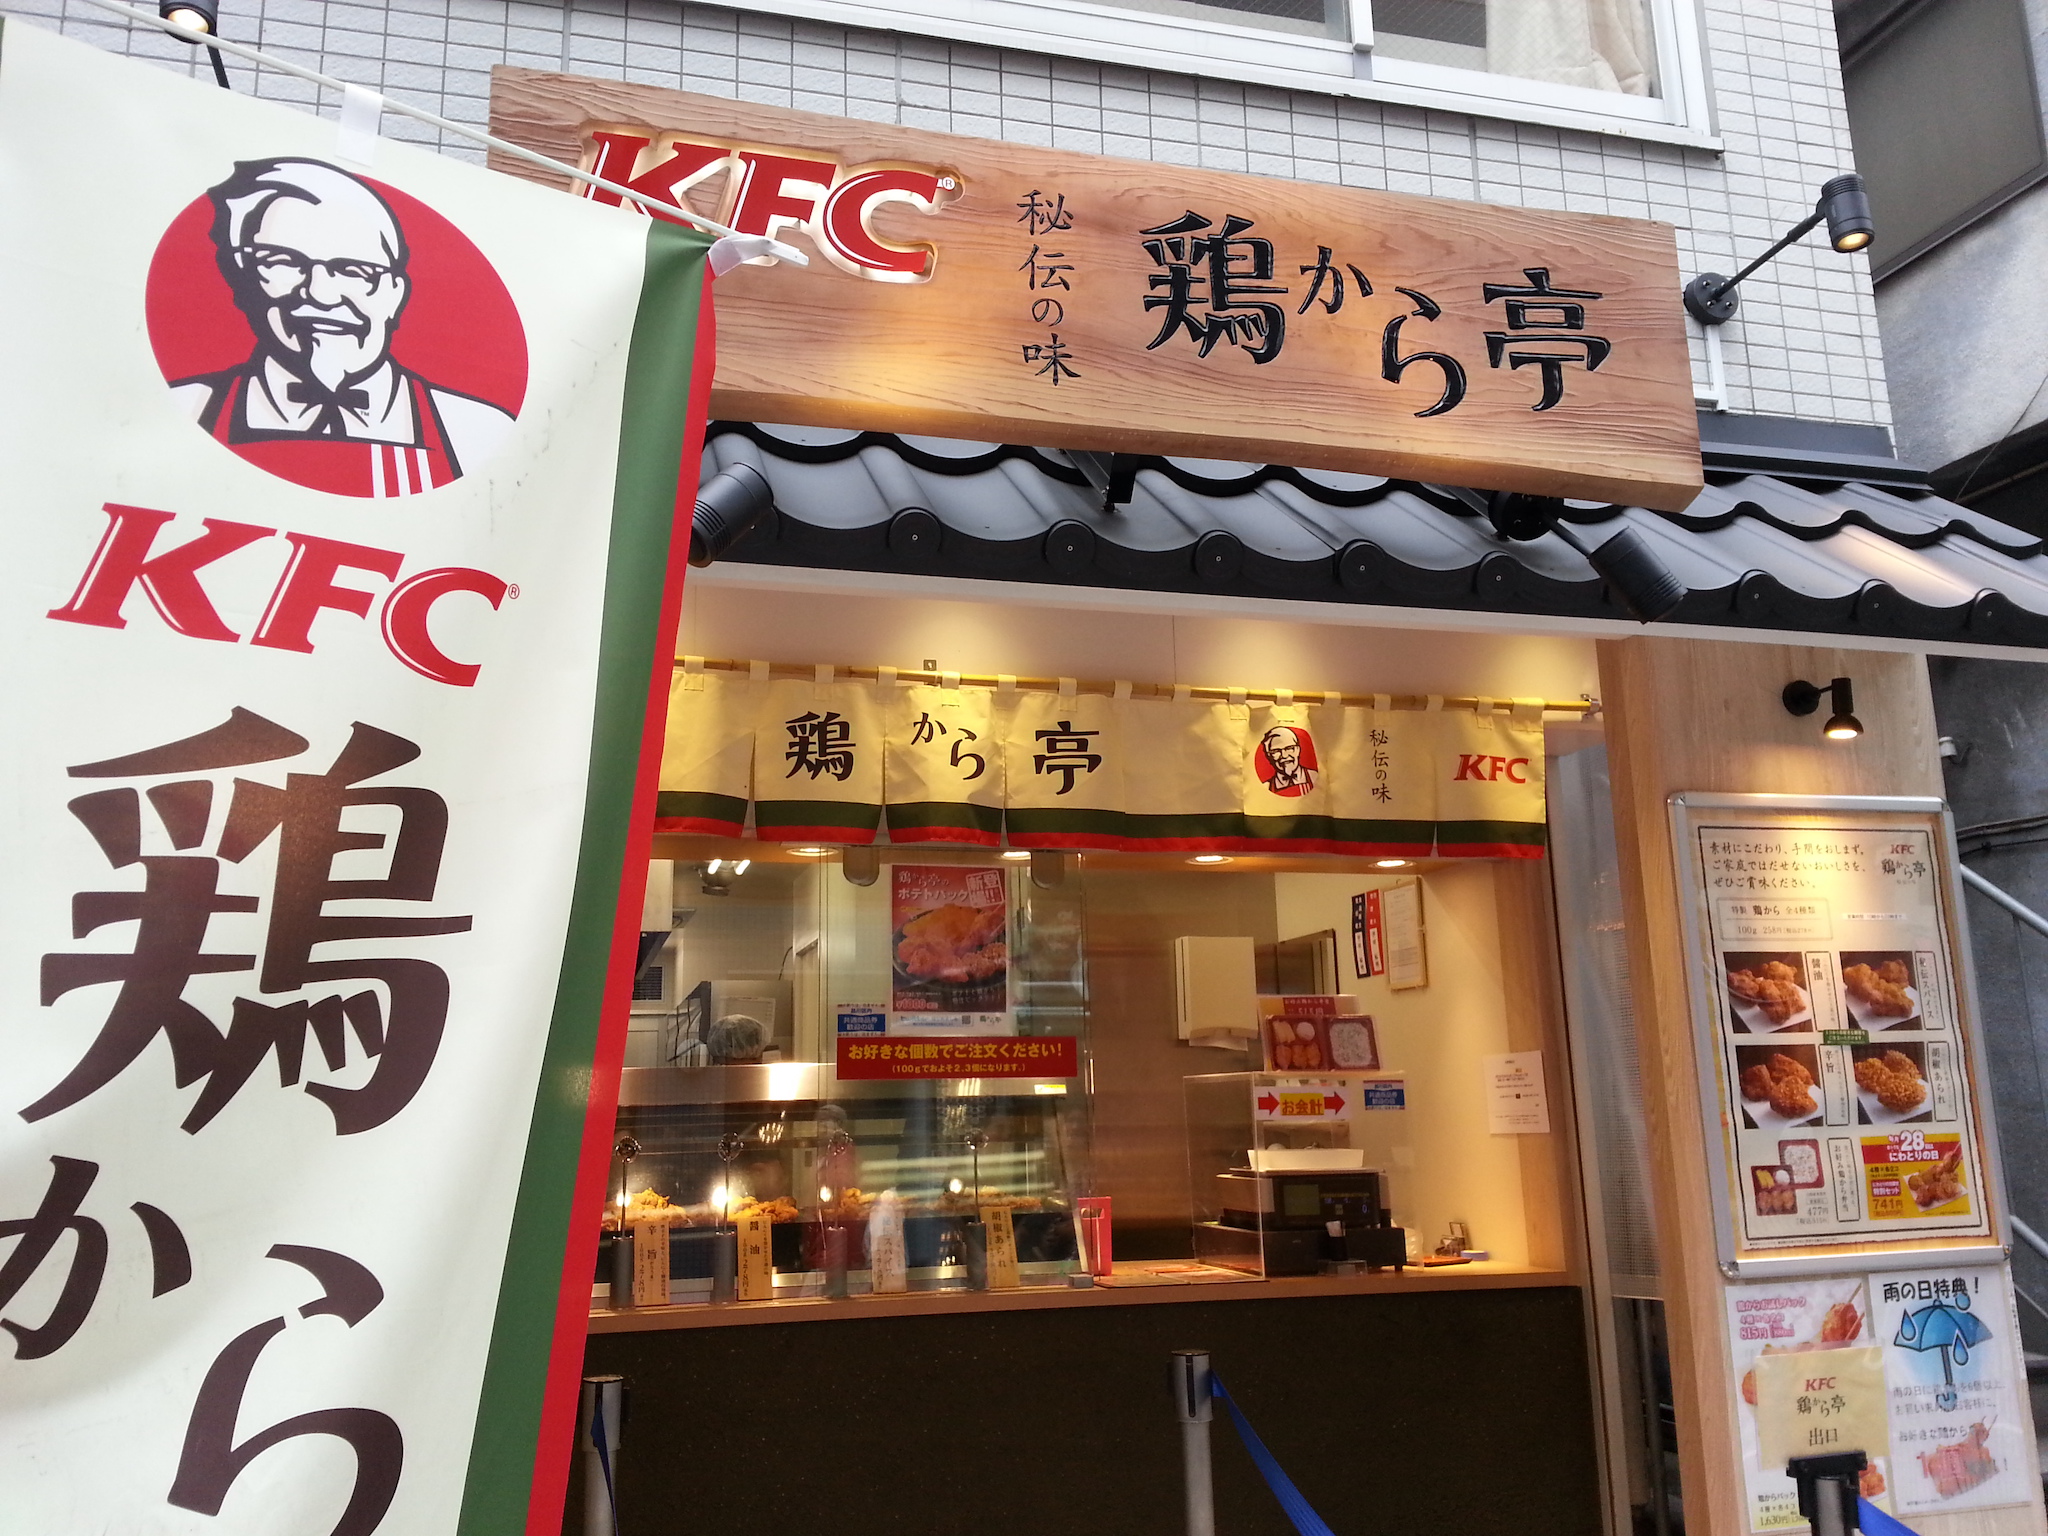 Tại sao người Nhật lại chuộng ăn KFC vào dịp Giáng sinh Nhờ một sáng kiến  đúng thời điểm từ hàng chục năm về trước